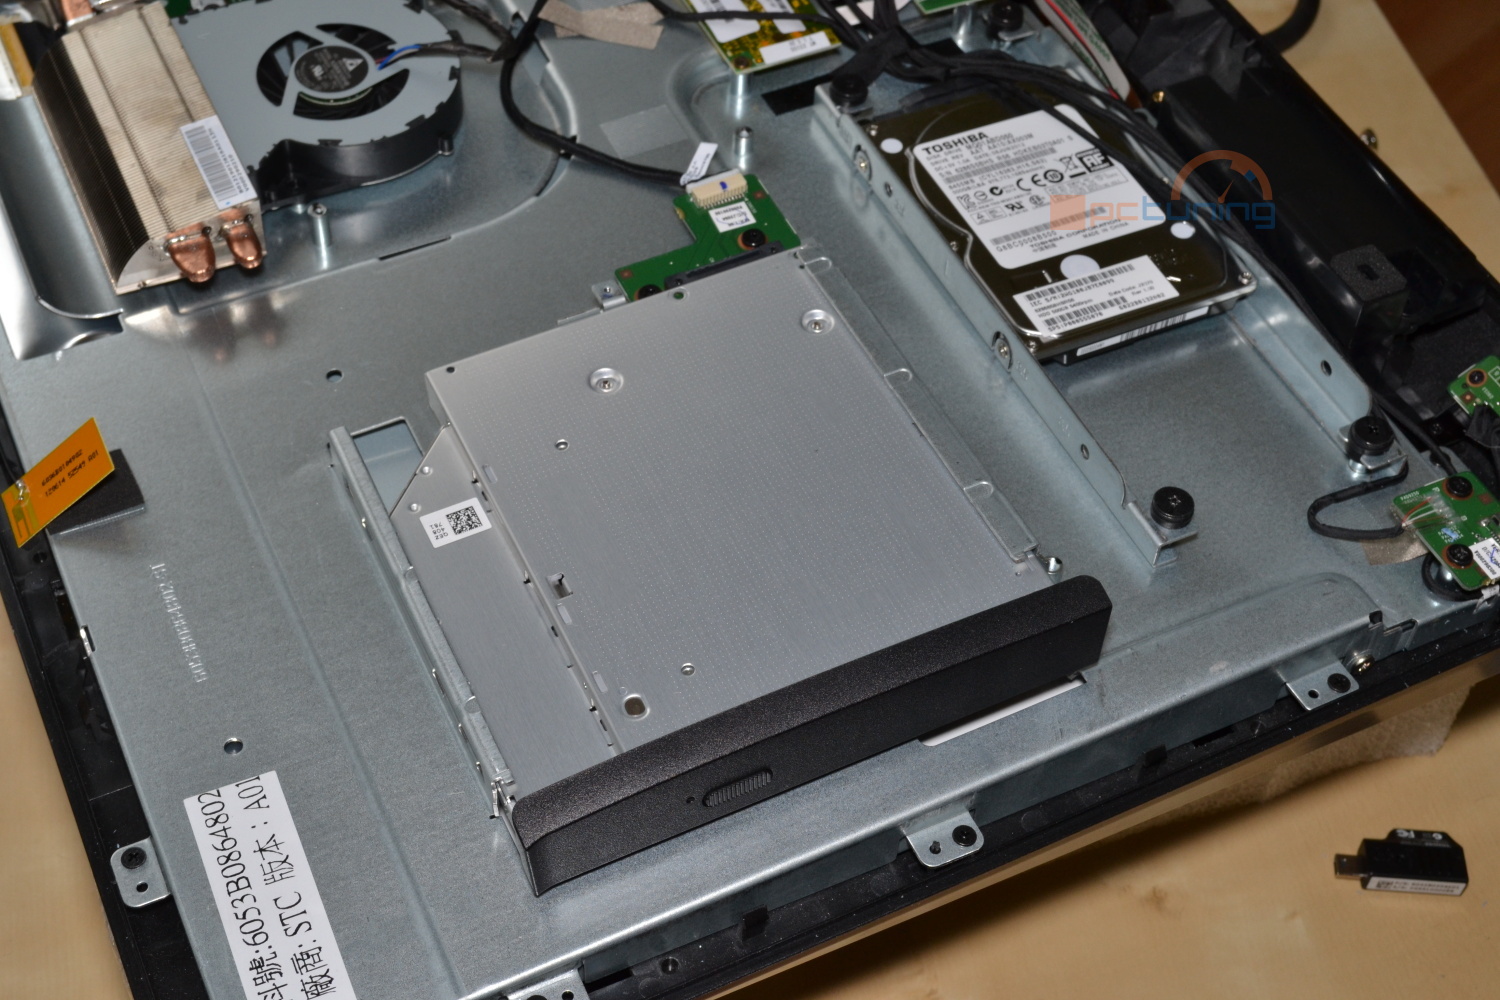 Toshiba LX830 – dotykové PC „vše v jednom“ s Windows 8